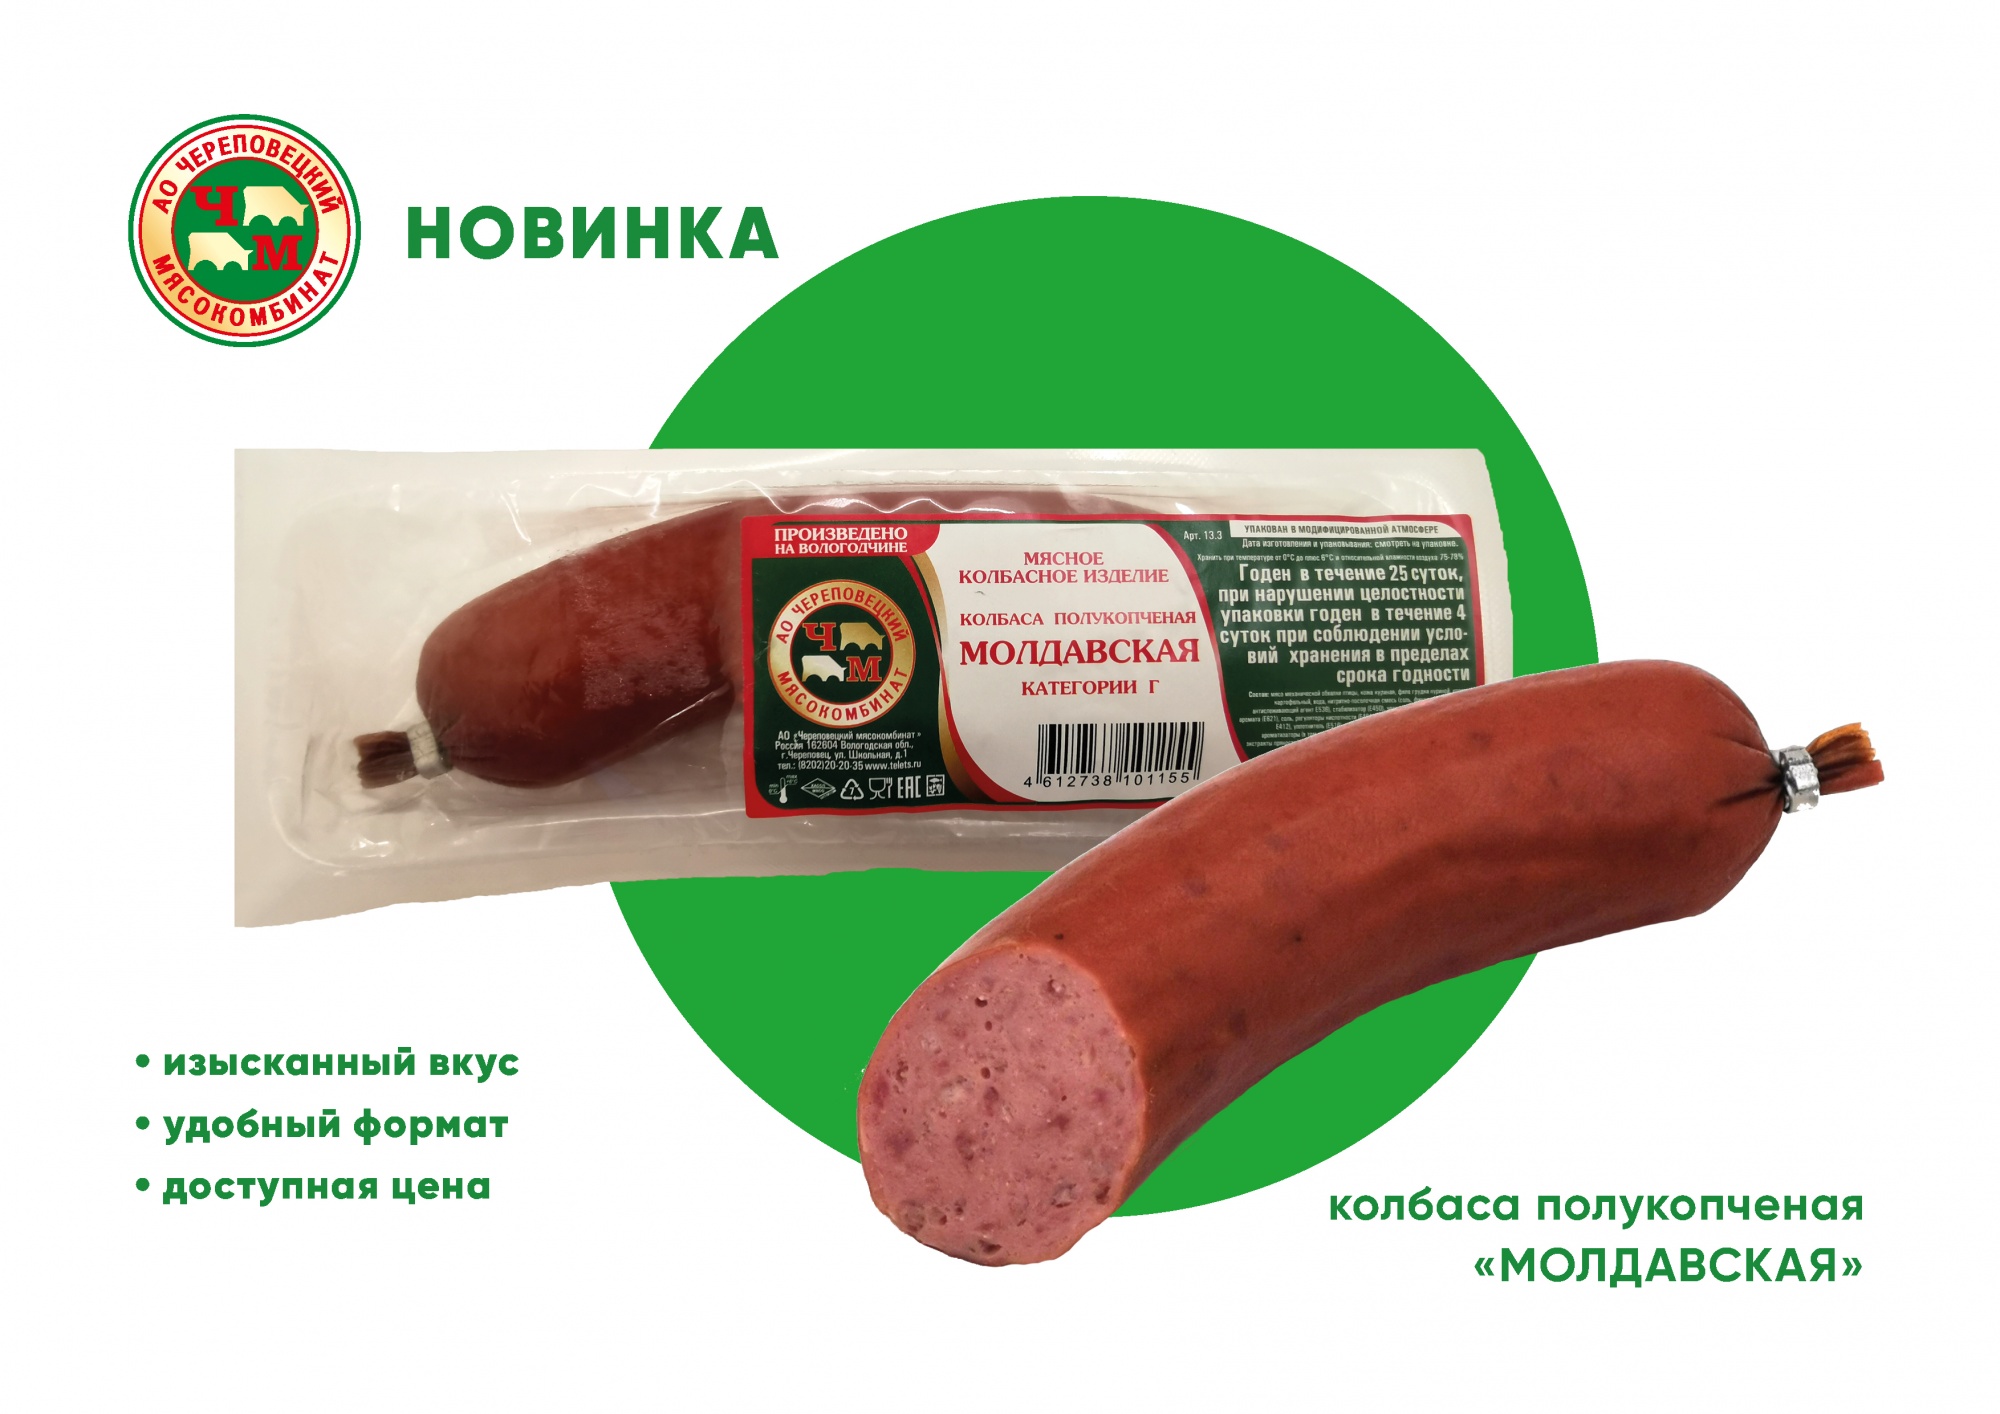 Новинка — полукопченая колбаса "Молдавская"